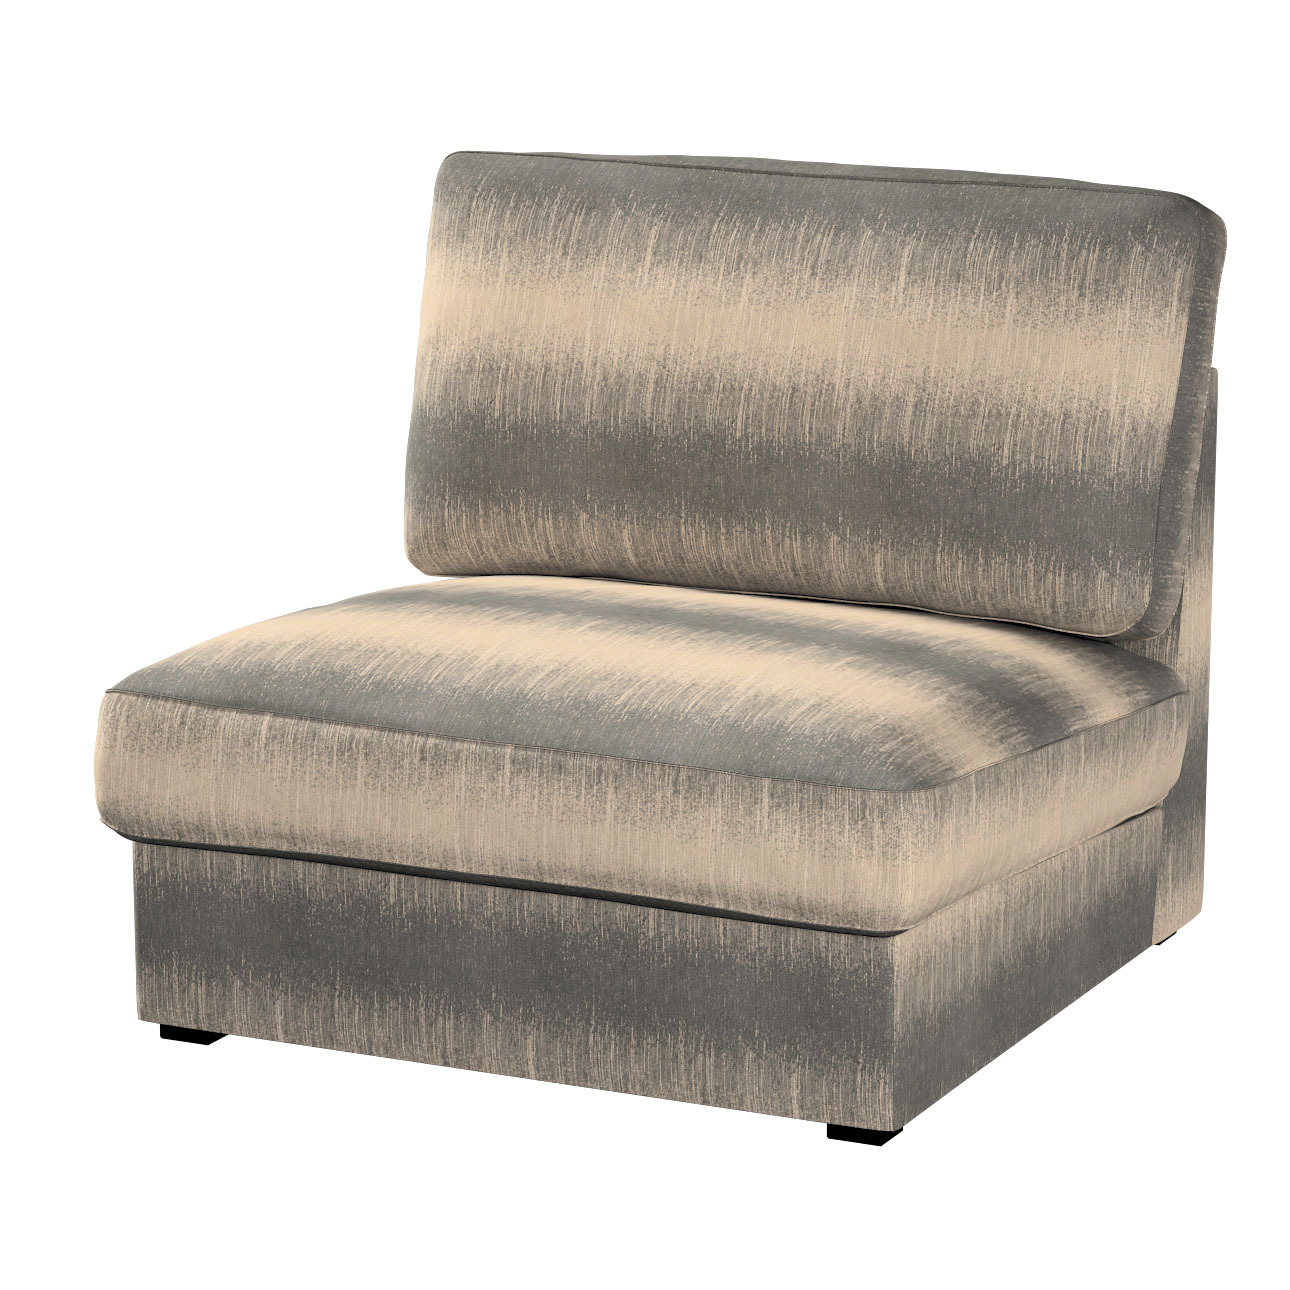 Bezug für Kivik Sessel nicht ausklappbar, grau-beige, Bezug für Sessel Kivi günstig online kaufen